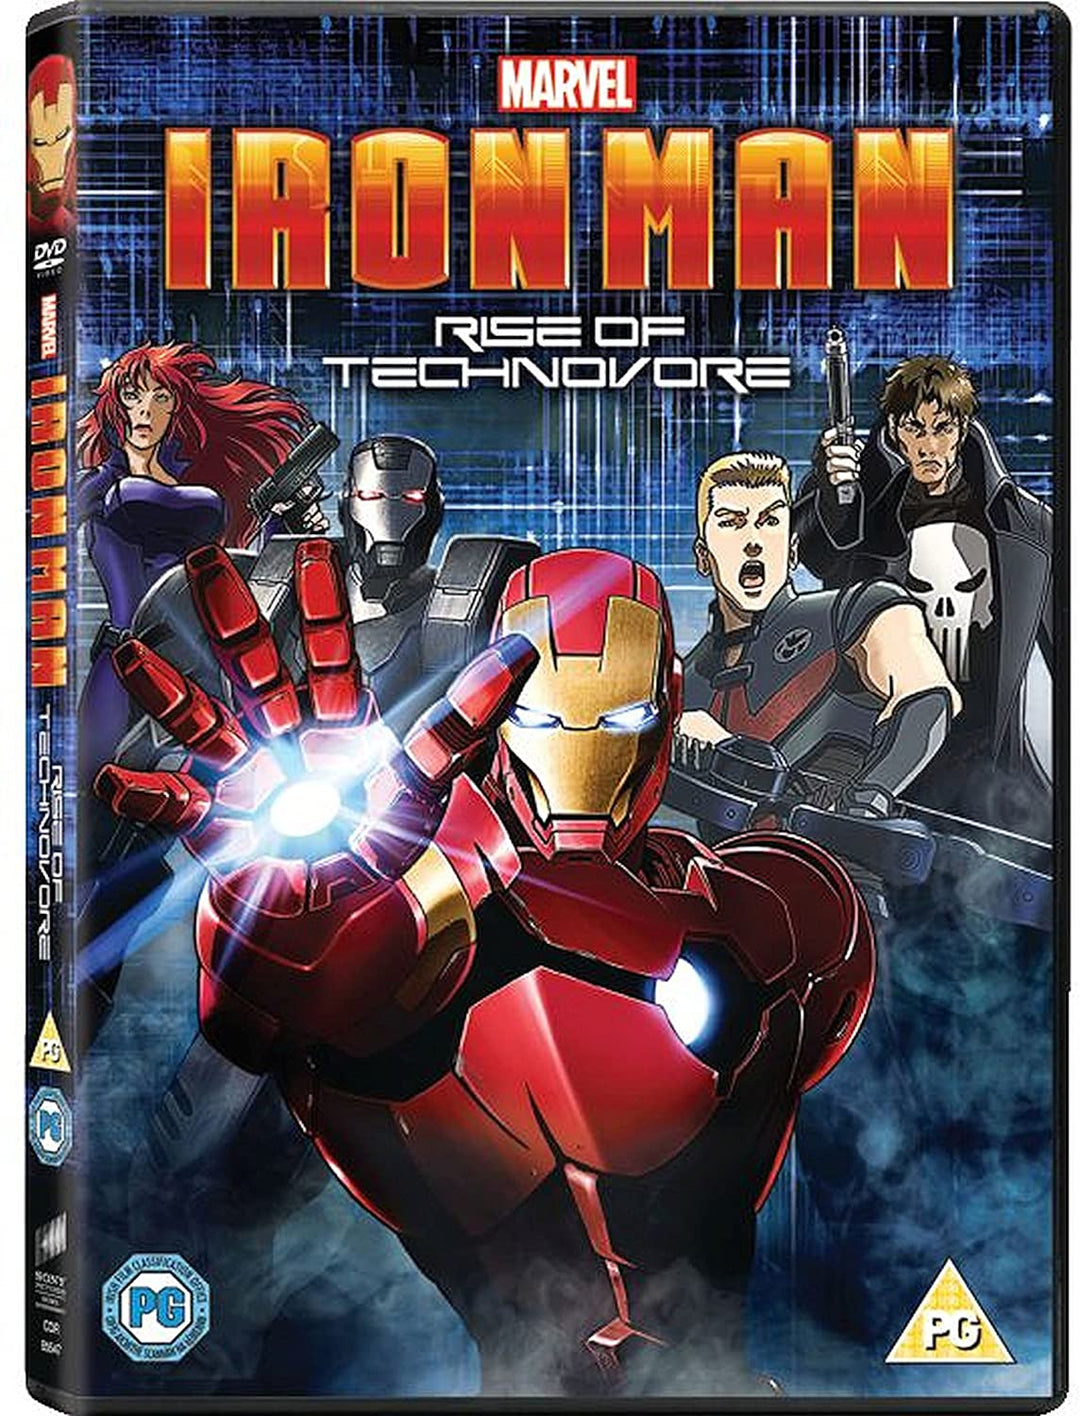 Iron Man: Rise Of Technovore – Anime [DVD]